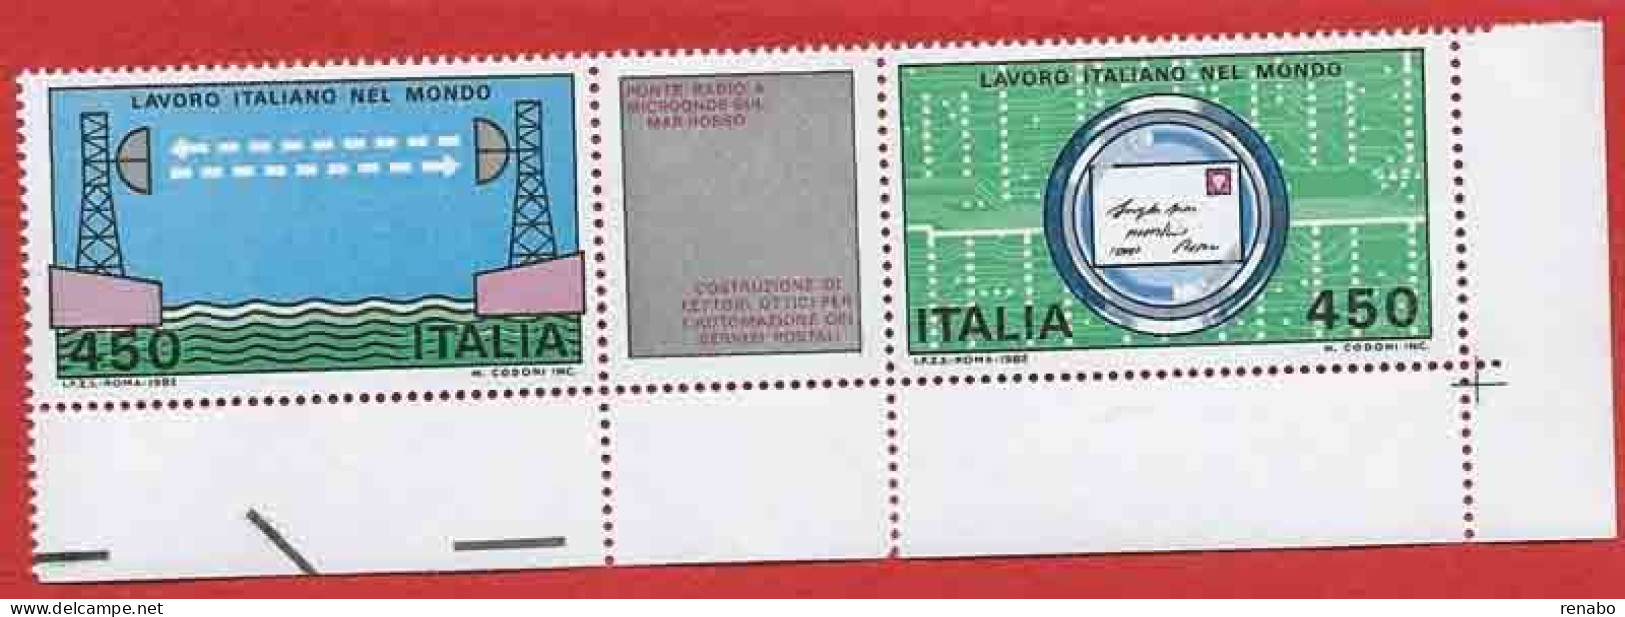 Italia, Italy, Italien 1982; Ponte Radio : Lavoro Italiano Nel Mondo, Serie Completa : Angolo Inferiore Destro. - Telecom